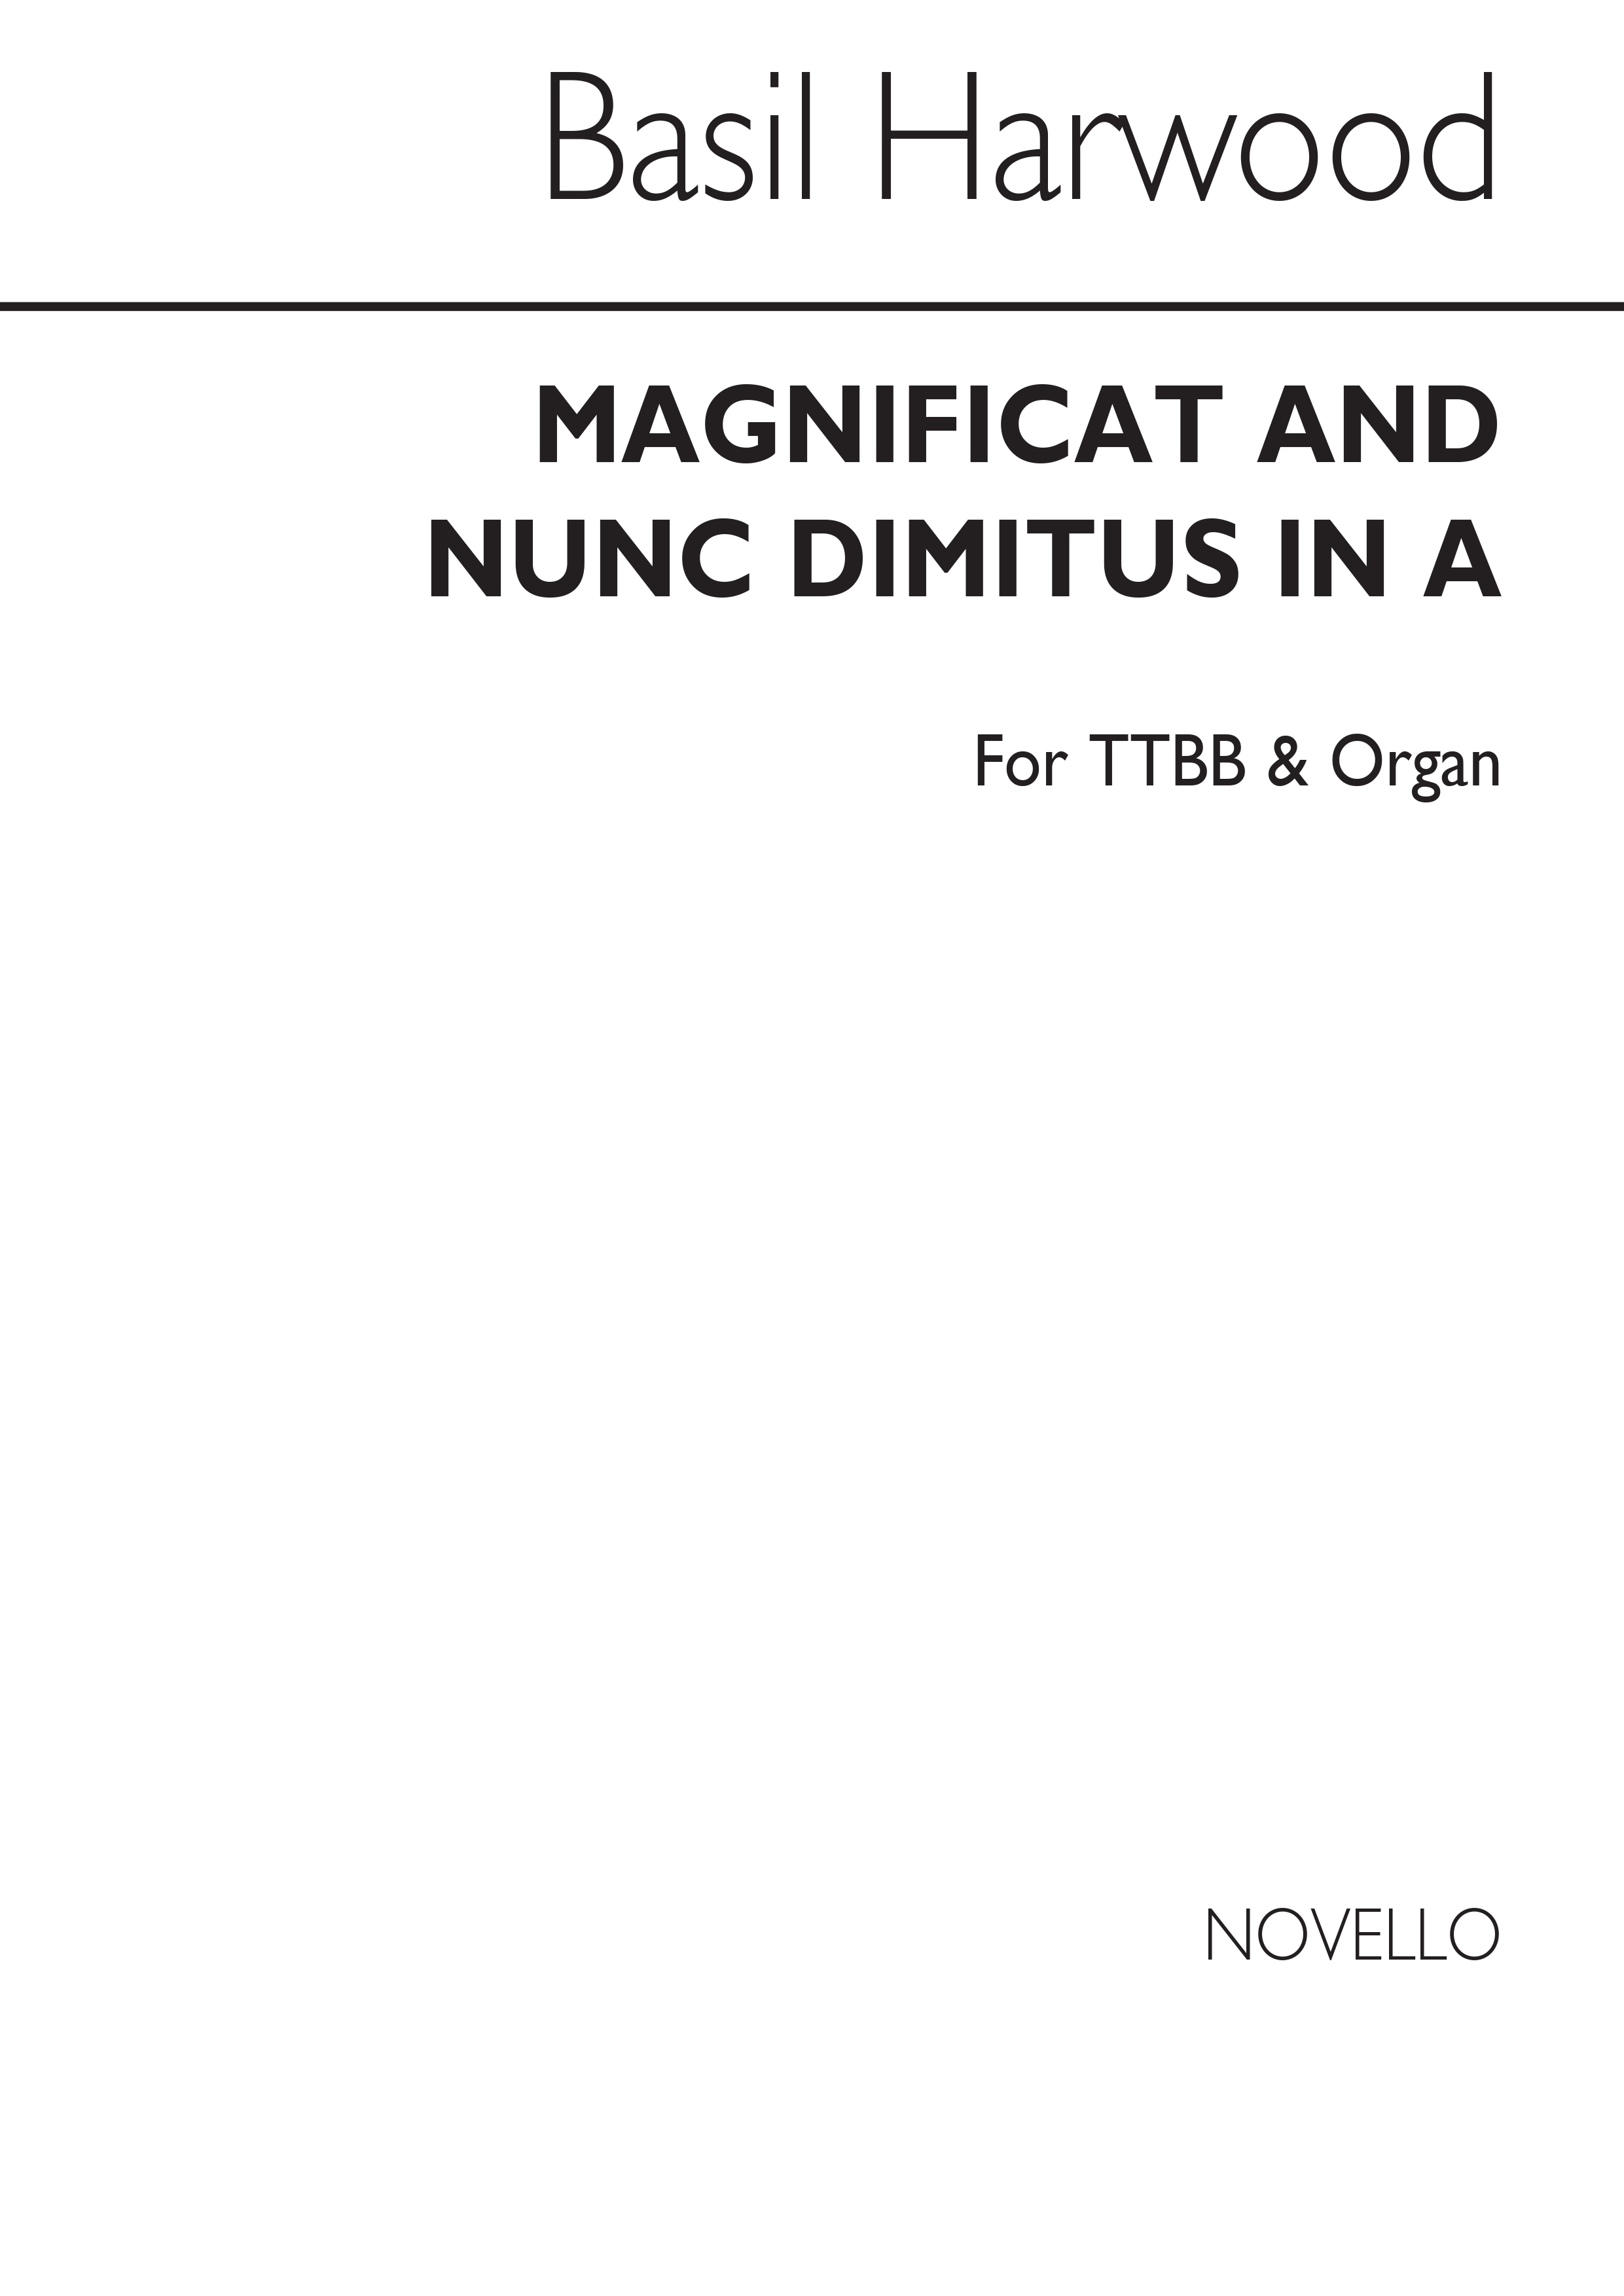 Basil Harwood: Magnificat and Nunc Dimitis In A (Men's Voices): Men's Voices: